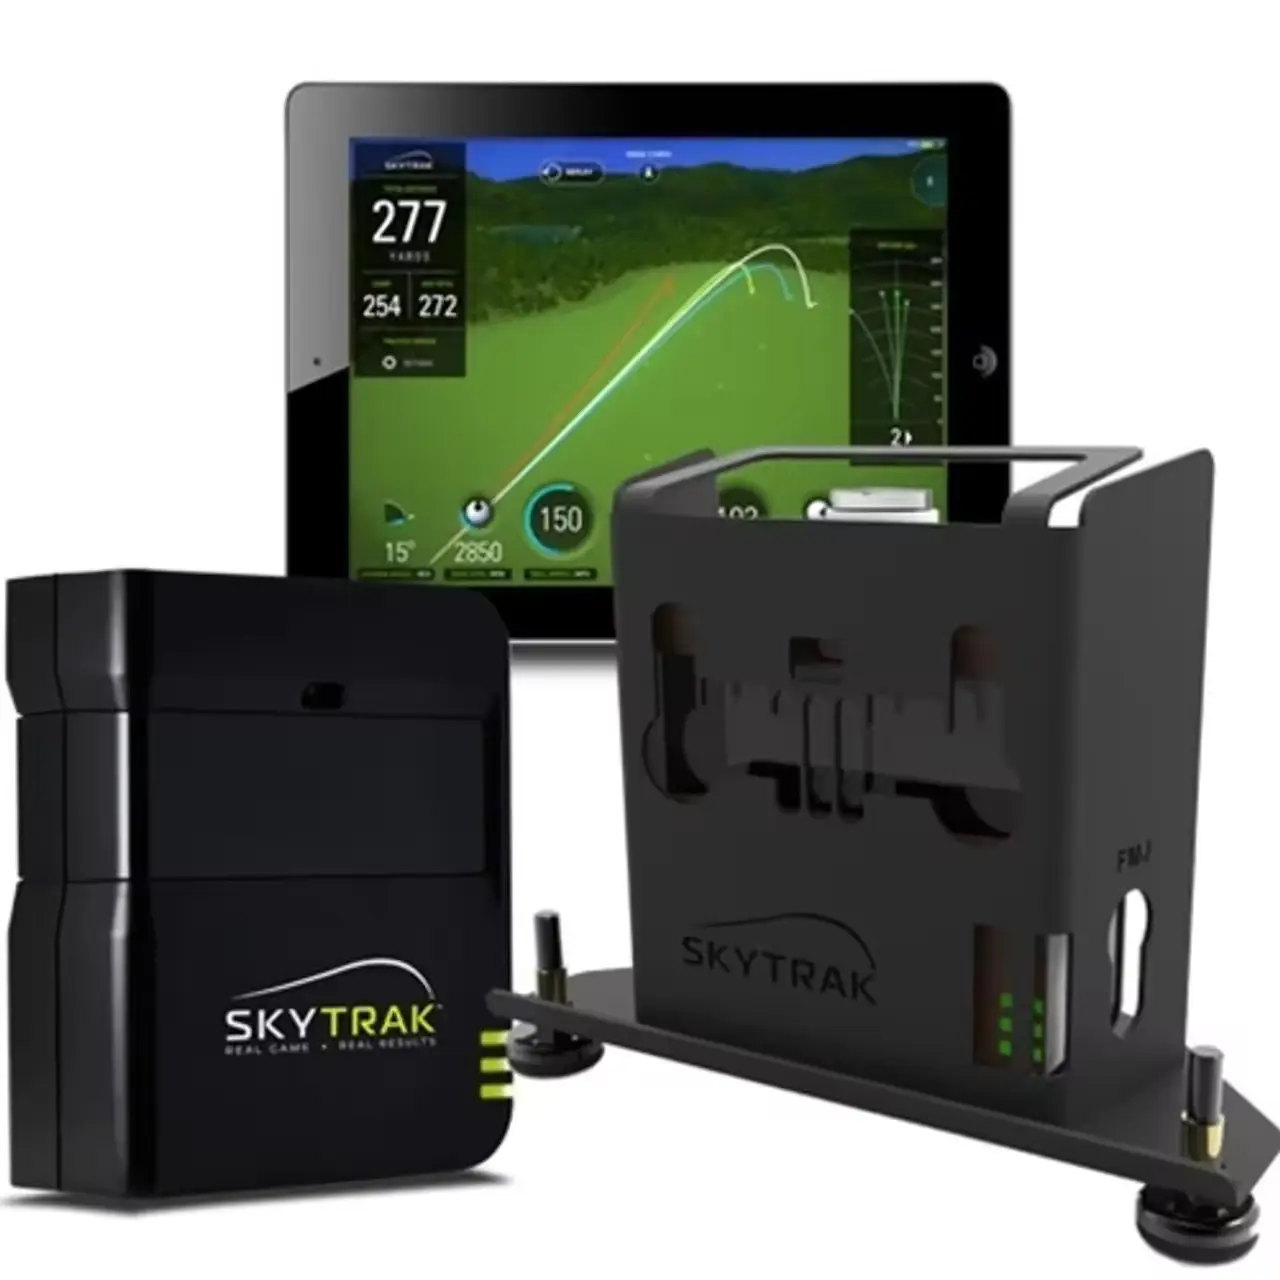 Hochwertiger Sky-trak Startmonitor und Golfsimulator